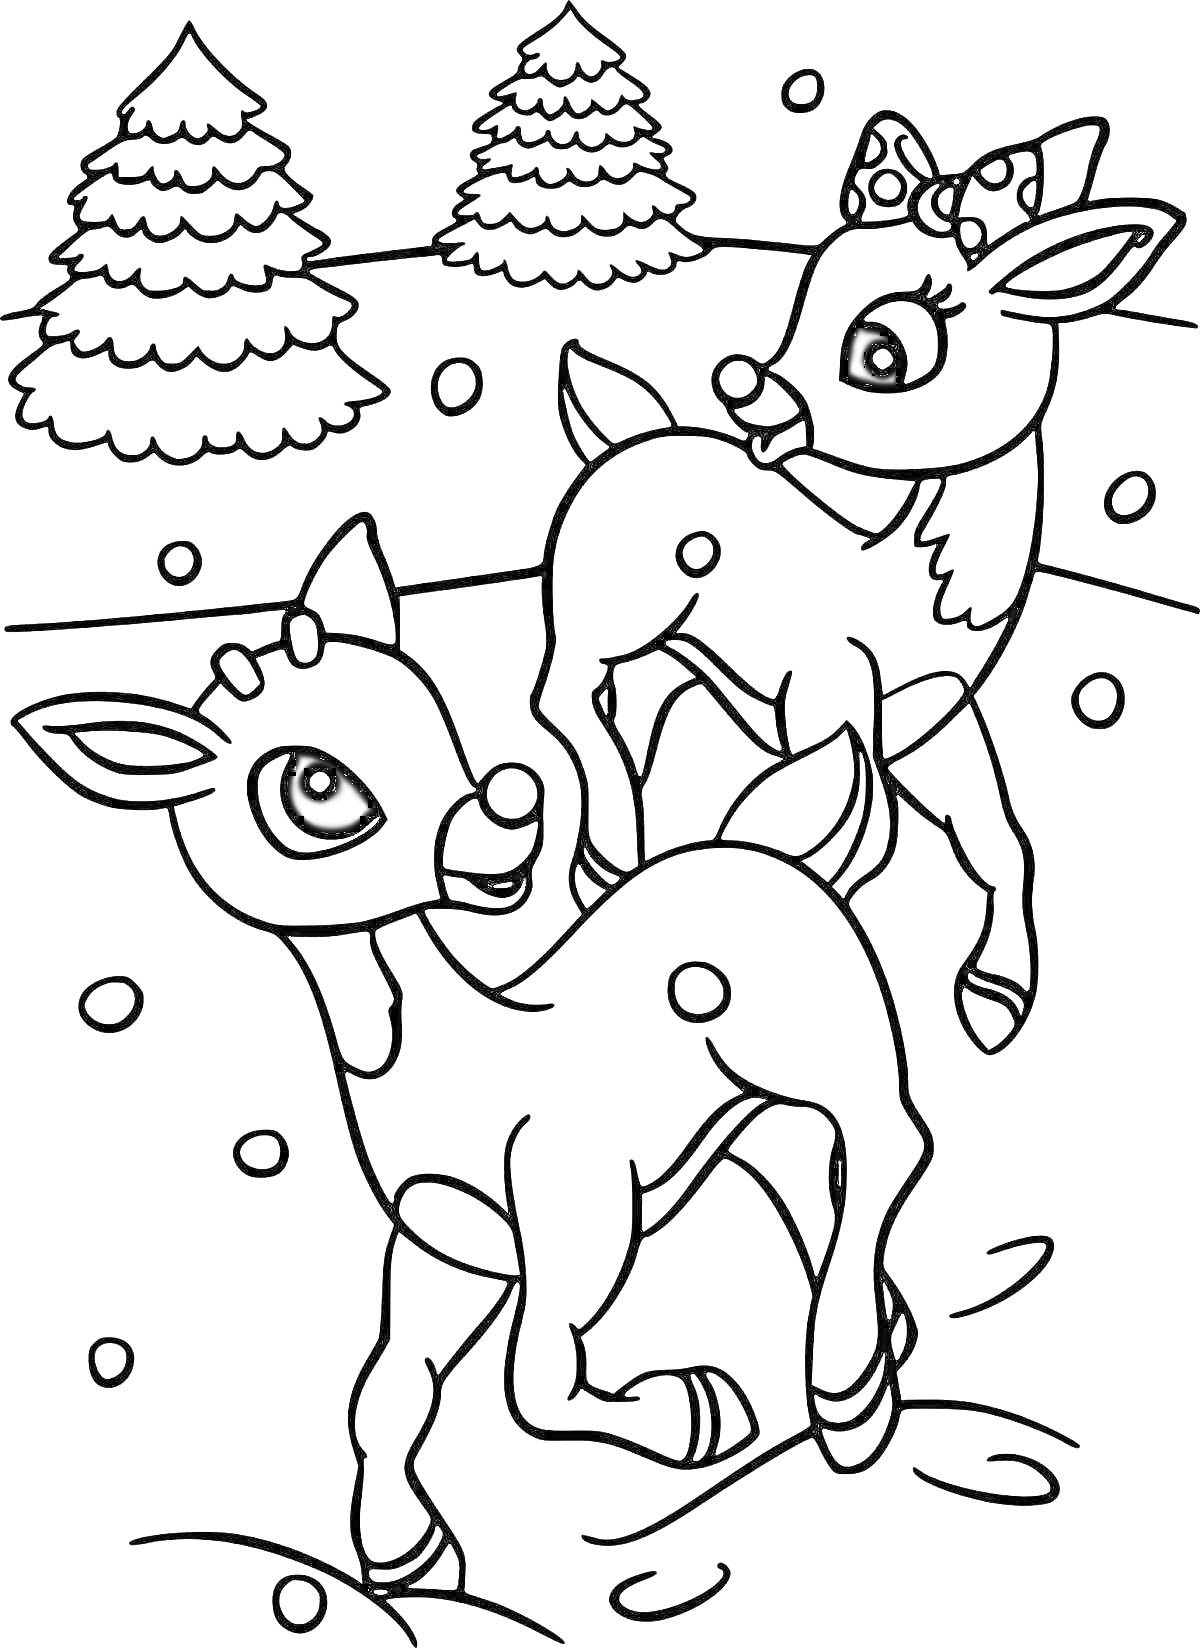 Раскраска Два олененка на фоне елок и снежинок